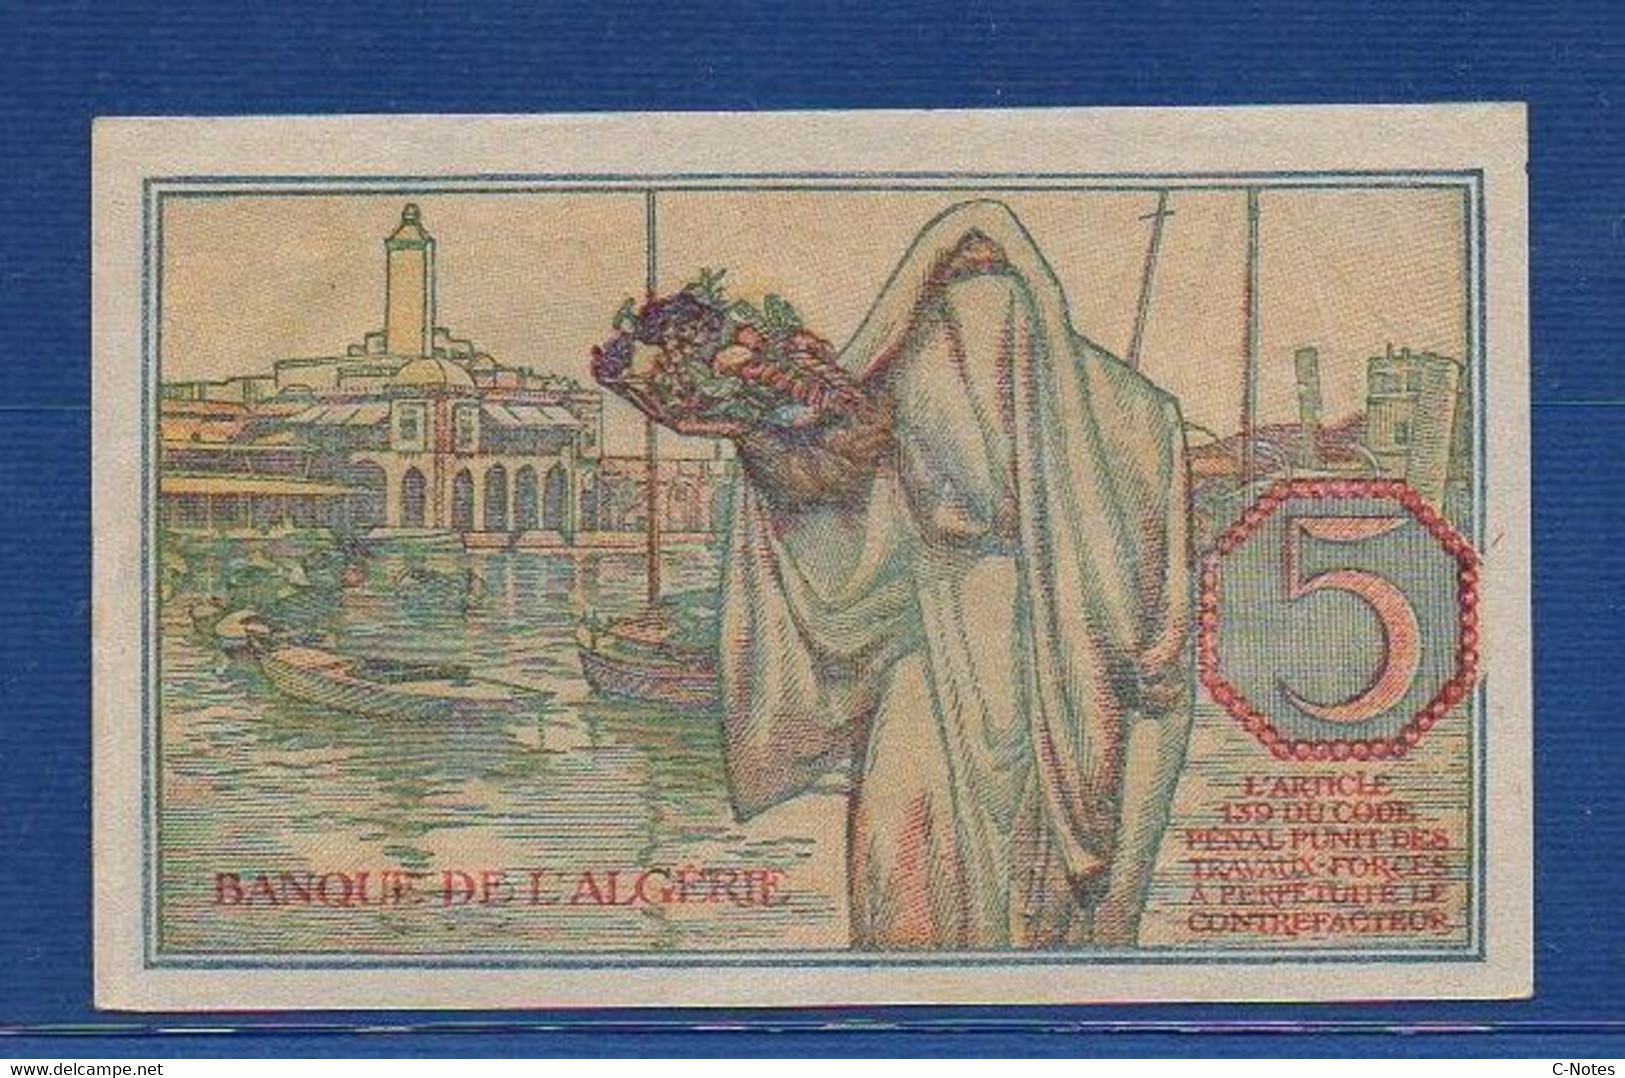 ALGERIA - P. 94b – 5 Francs 1944 AUNC,  Serie W.1010 970 - Algeria